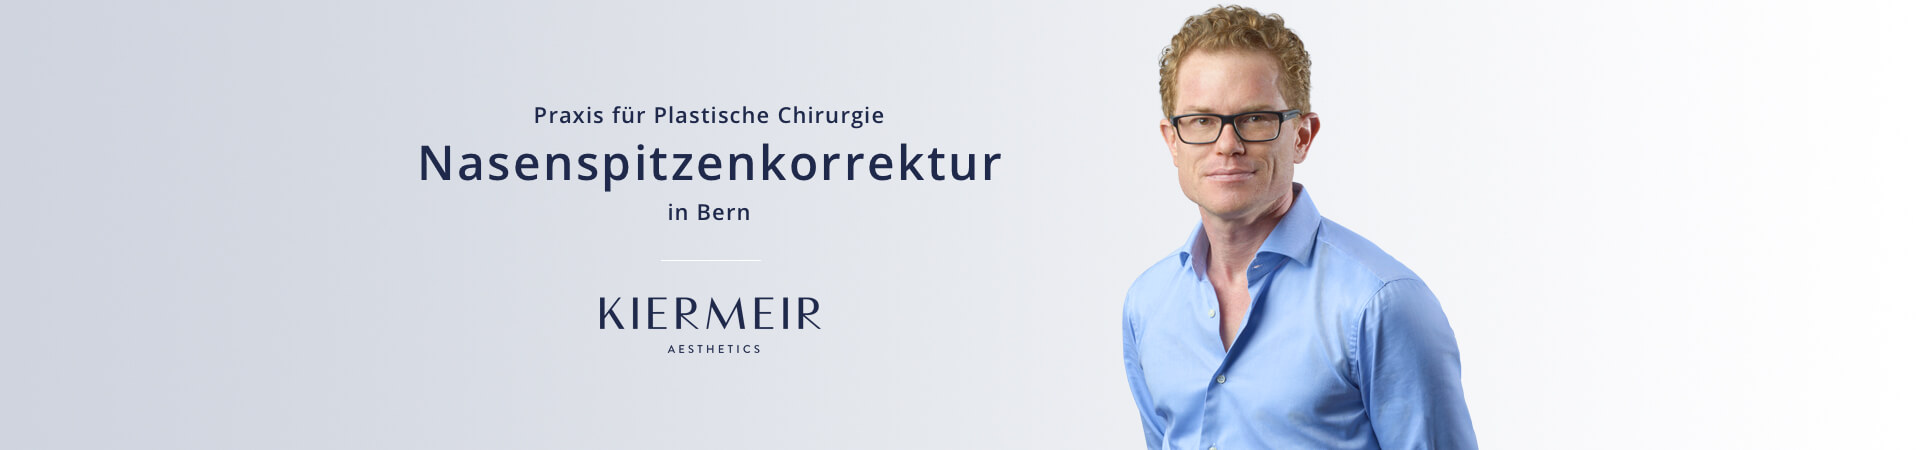 Nasenspitzenkorrektur in Bern, Dr. Kiermeir 